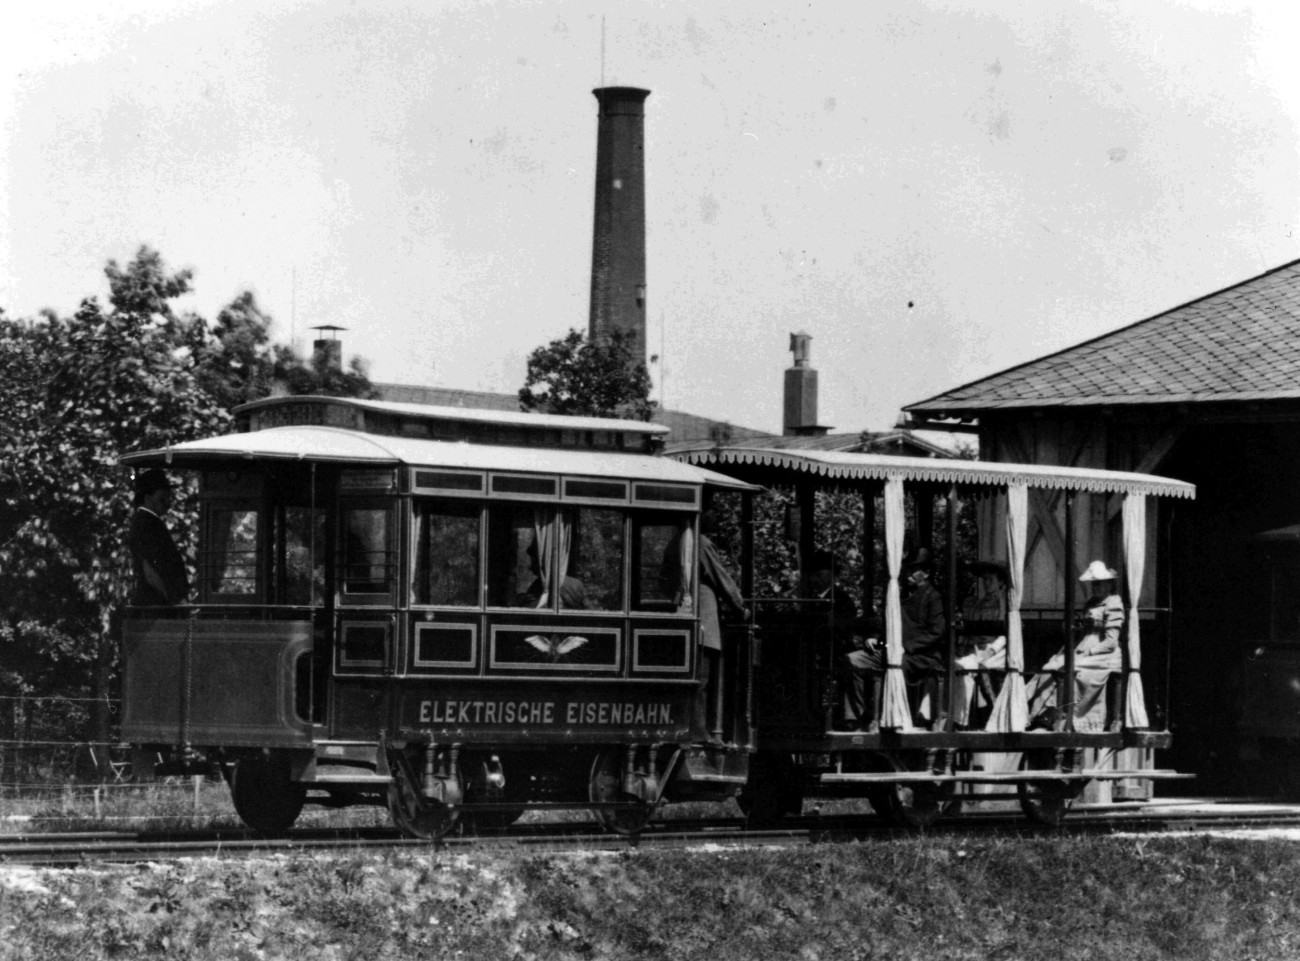 Für München lieferten die Schuckertwerke eine elektrische Straßenbahn, die 1886 den Betrieb aufnahm.